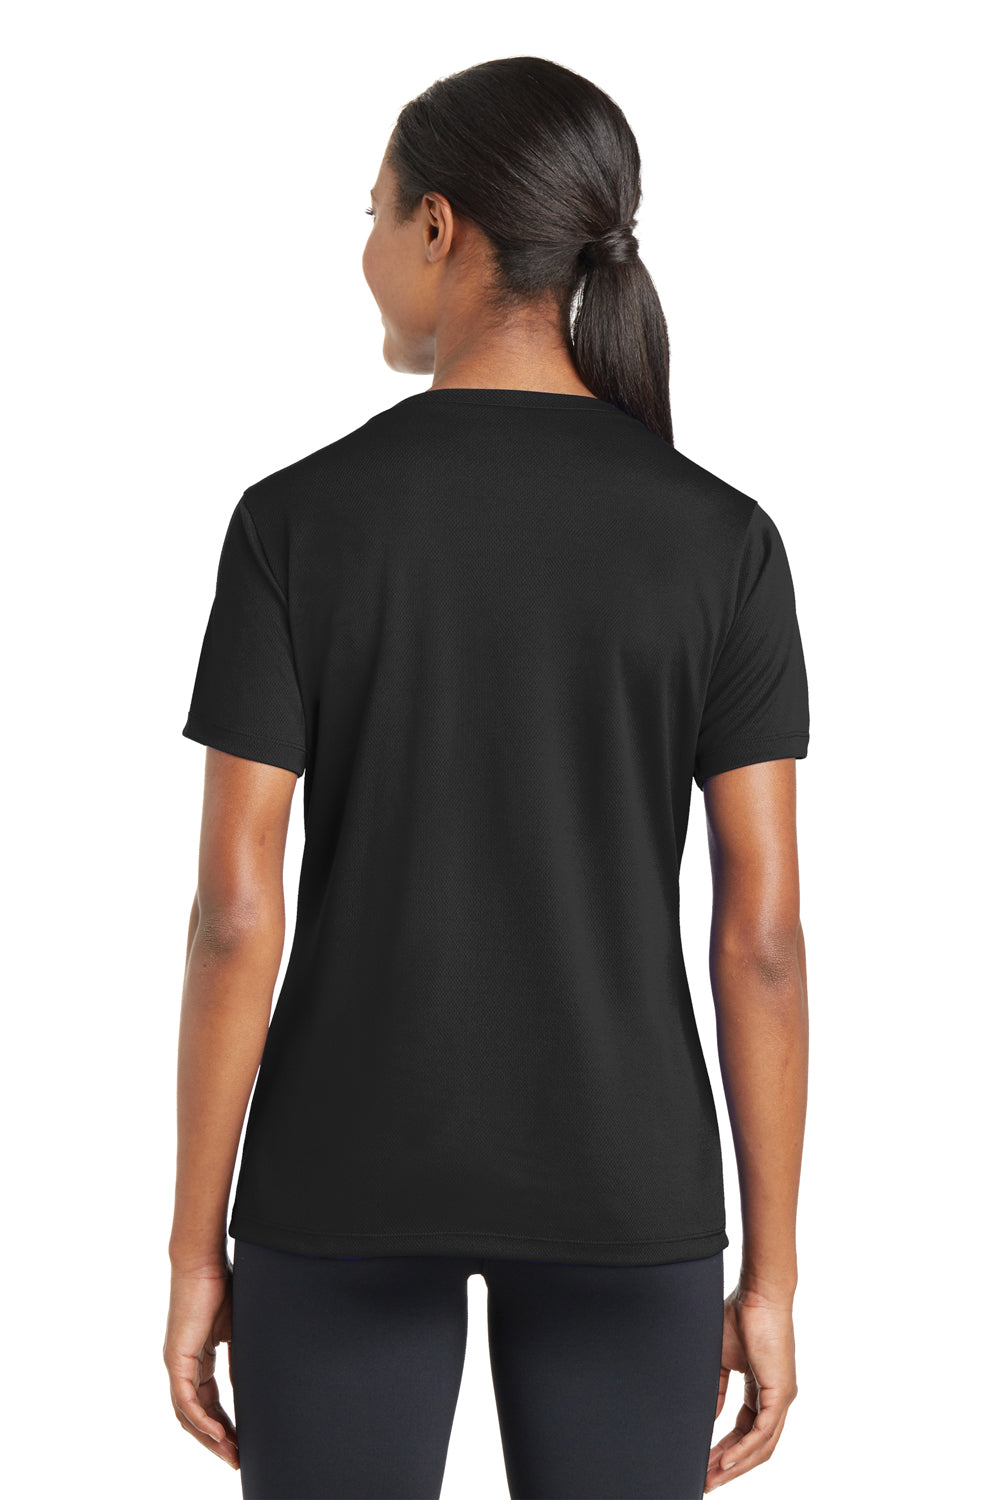 Sport-Tek LST340 Womens RacerMesh Moisture Wicking Short Sleeve V-Neck T-Shirt Black Back